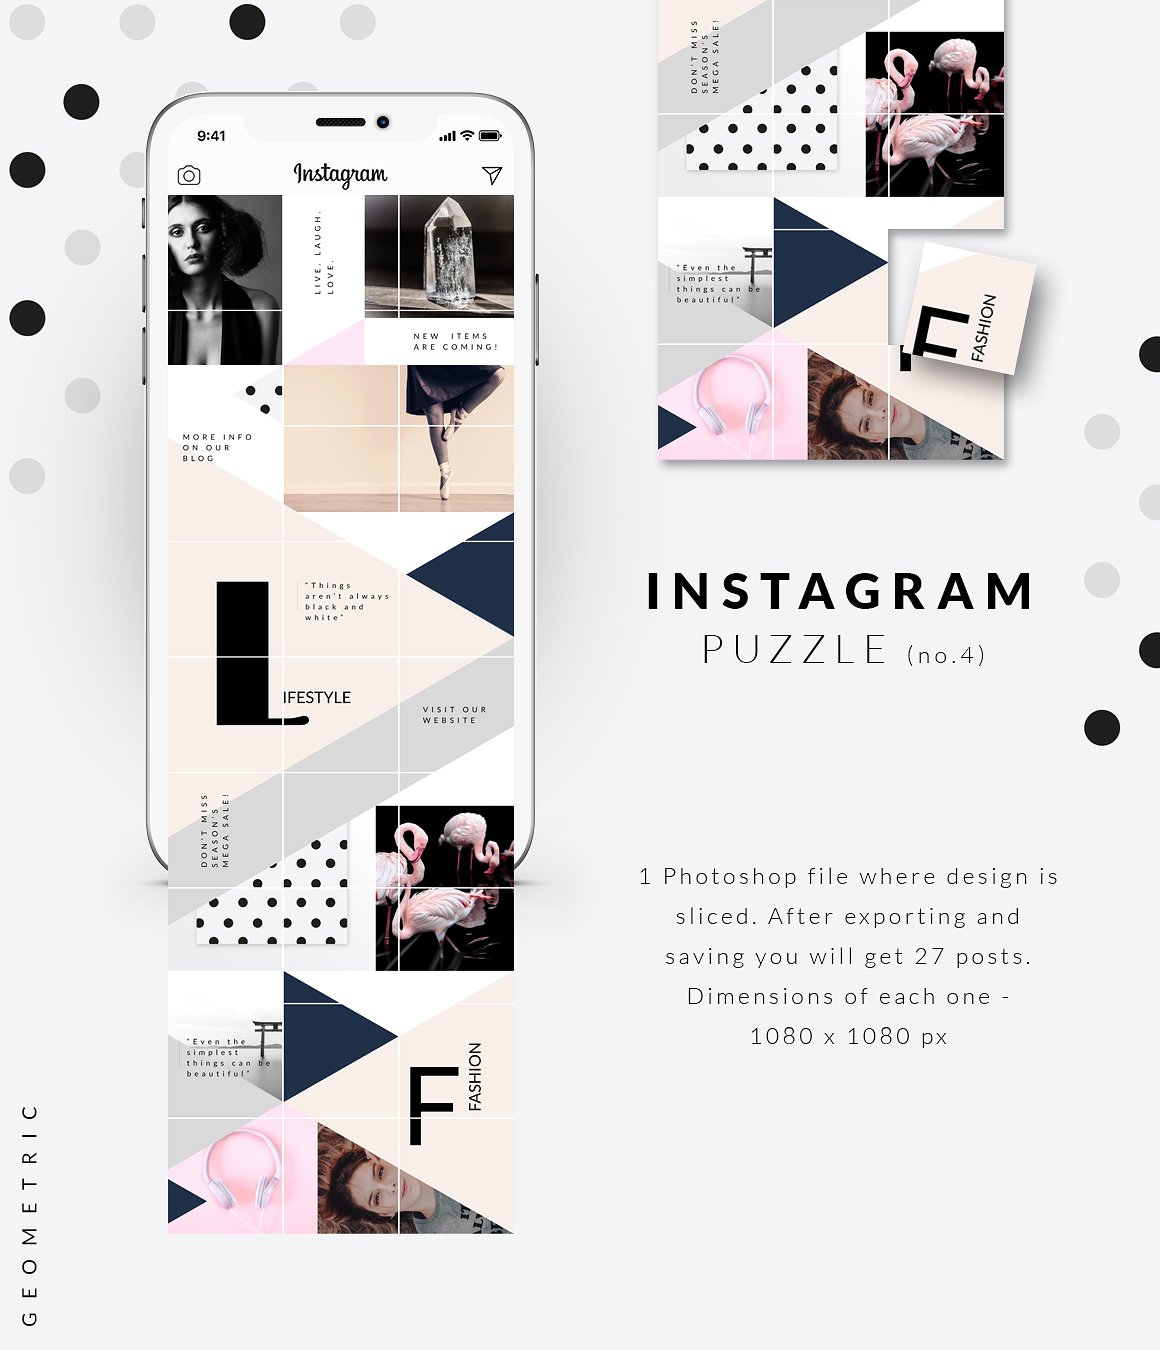 时尚高端几何形状布局的Instagram模板16图库精选 Instagram PUZZLE template -Geometric [psd]插图(4)